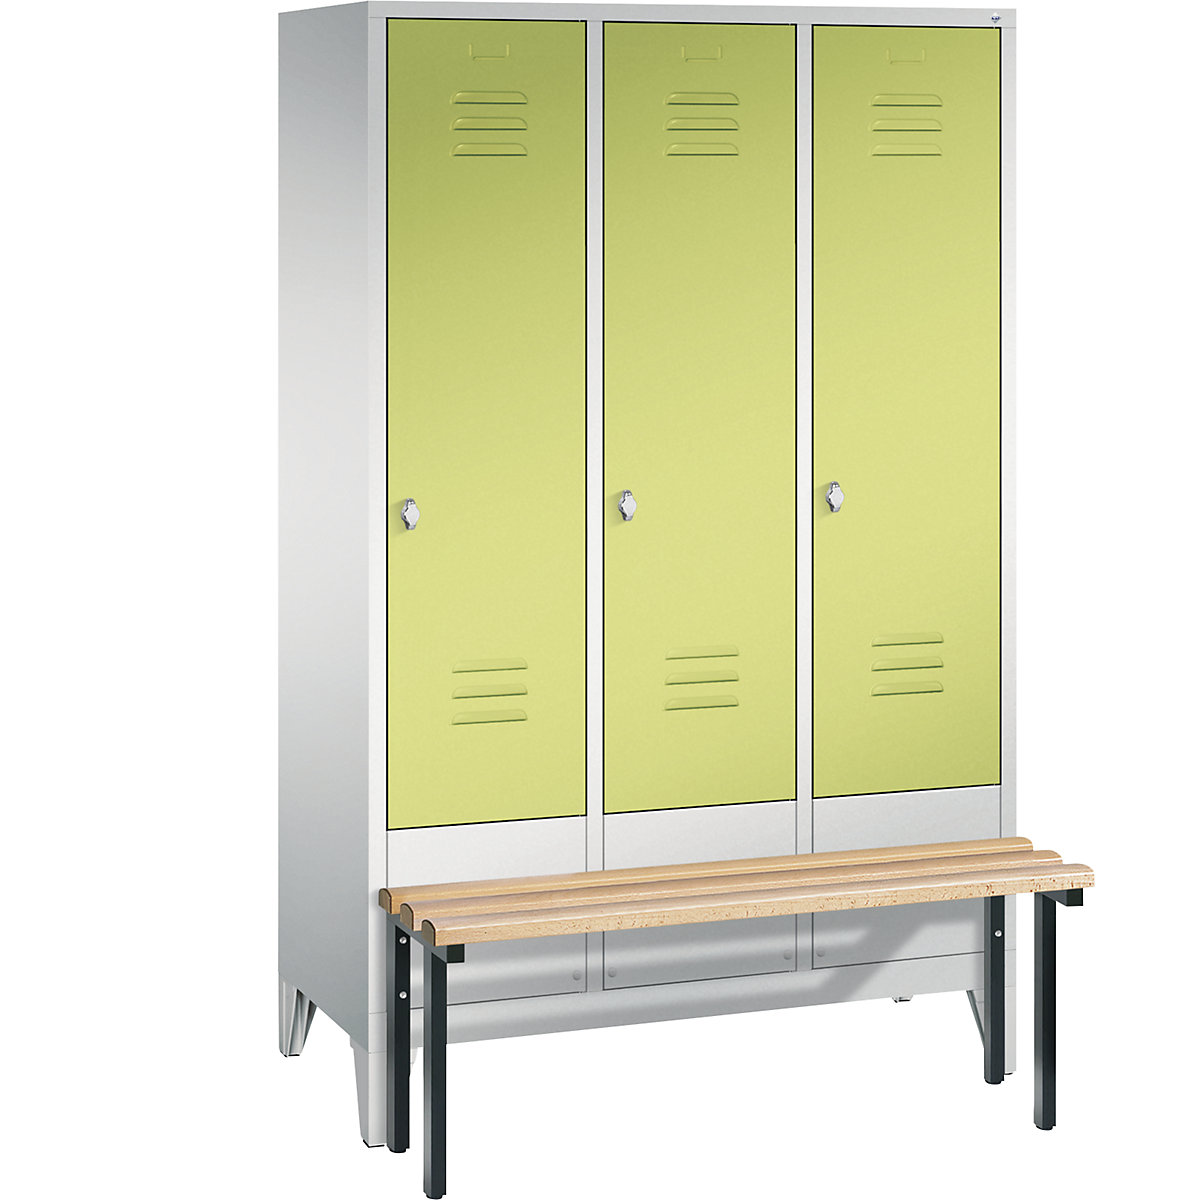 Garderobna omara CLASSIC s klopjo – C+P, 3 predelki, širina 400 mm/predelek, svetlo sive / rumeno zelene barve-12